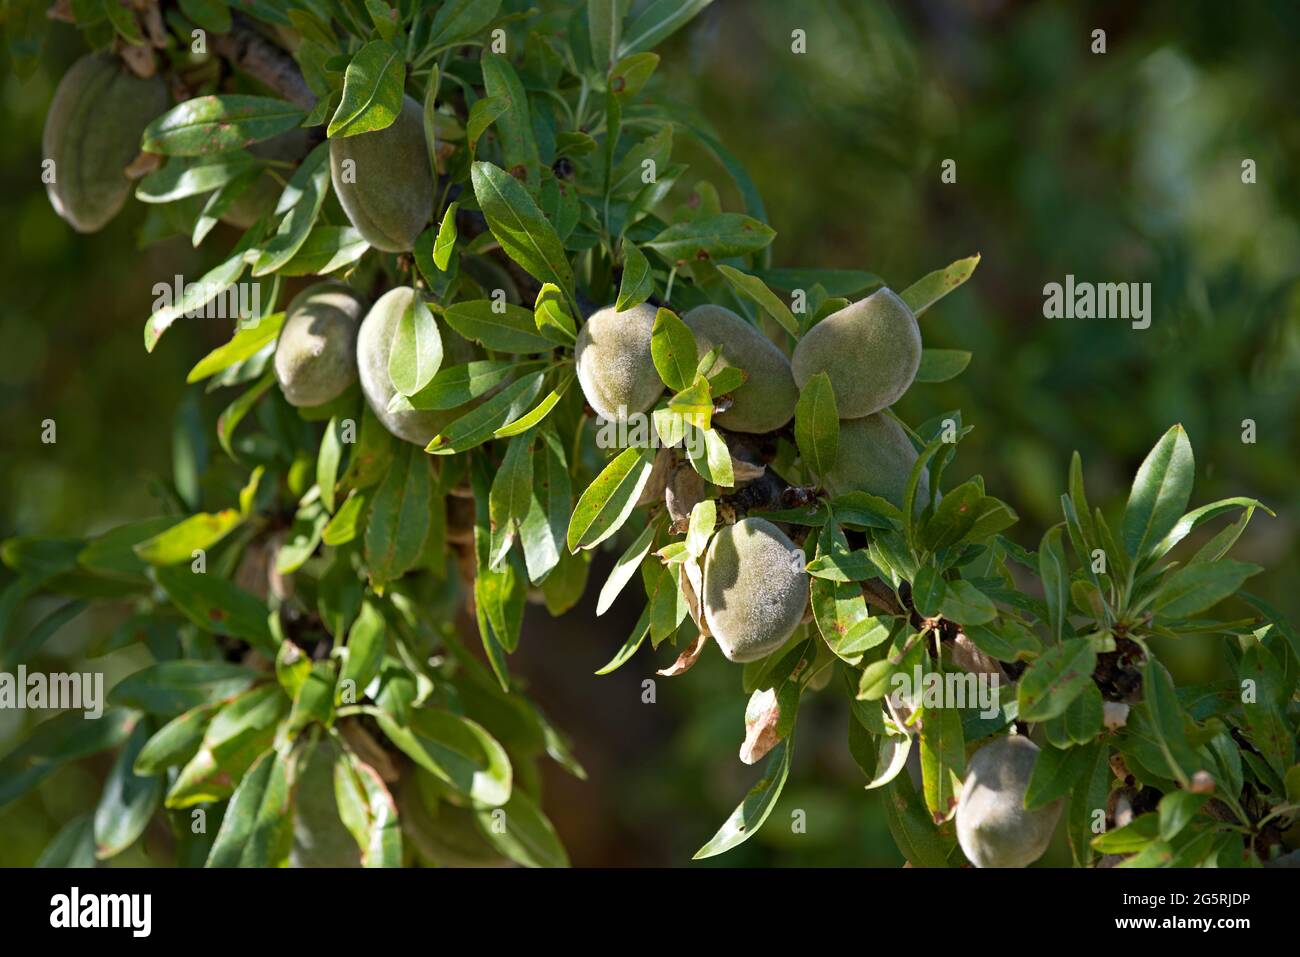 France, Alpes de Haute Provence (04), plateau de Valensole, Mandel Almond  (Prunus dulcis), Stock Photo